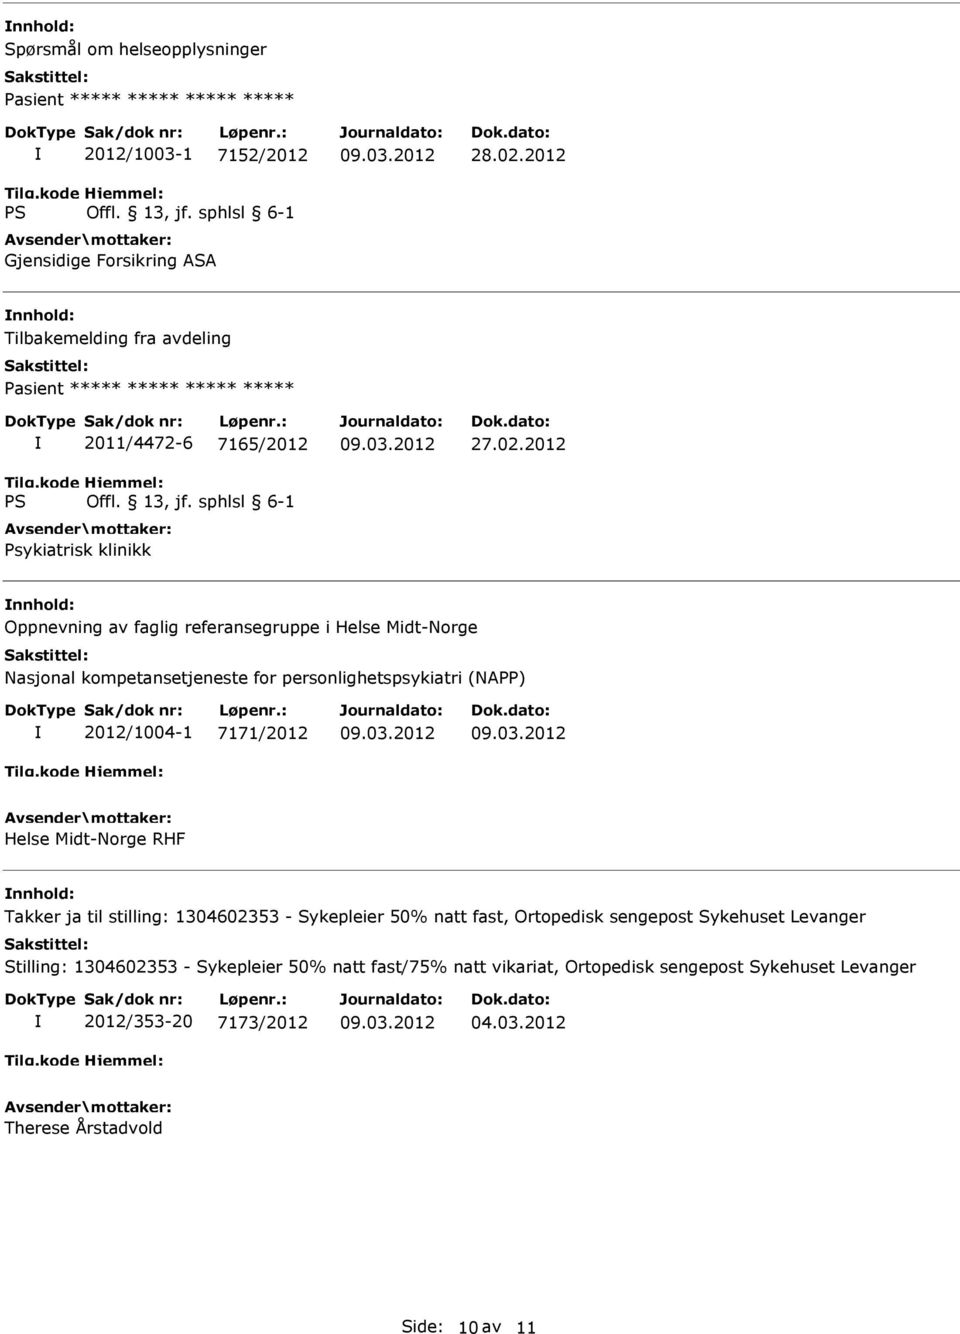 2012 Oppnevning av faglig referansegruppe i Helse Midt-Norge Nasjonal kompetansetjeneste for personlighetspsykiatri (NAPP) 2012/1004-1 7171/2012 Helse